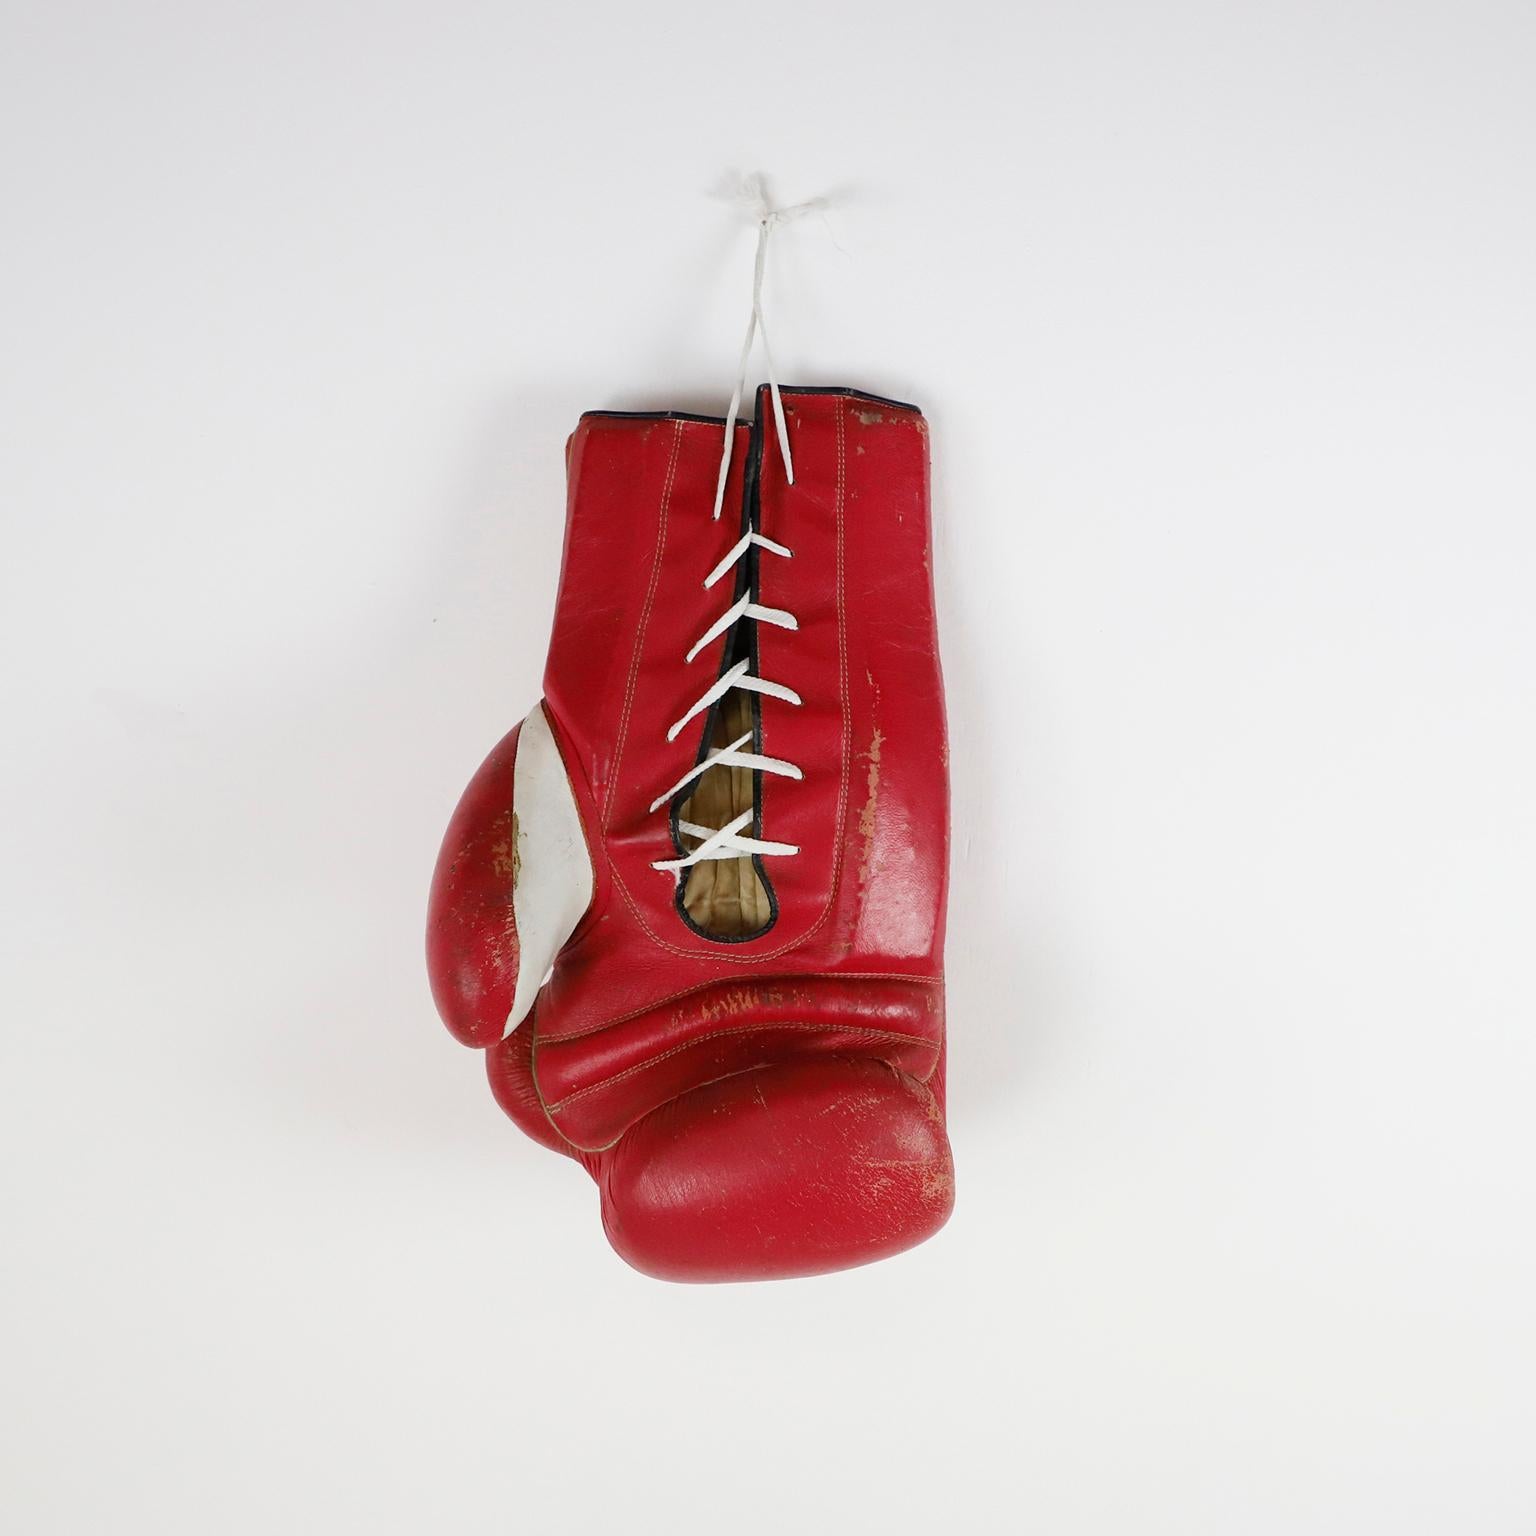 Circa 1970, Nous vous proposons ce gant de boxe Bigli Vintage de Cleto Reyes, en cuir, idéal pour la décoration ou pour obtenir des autographes.